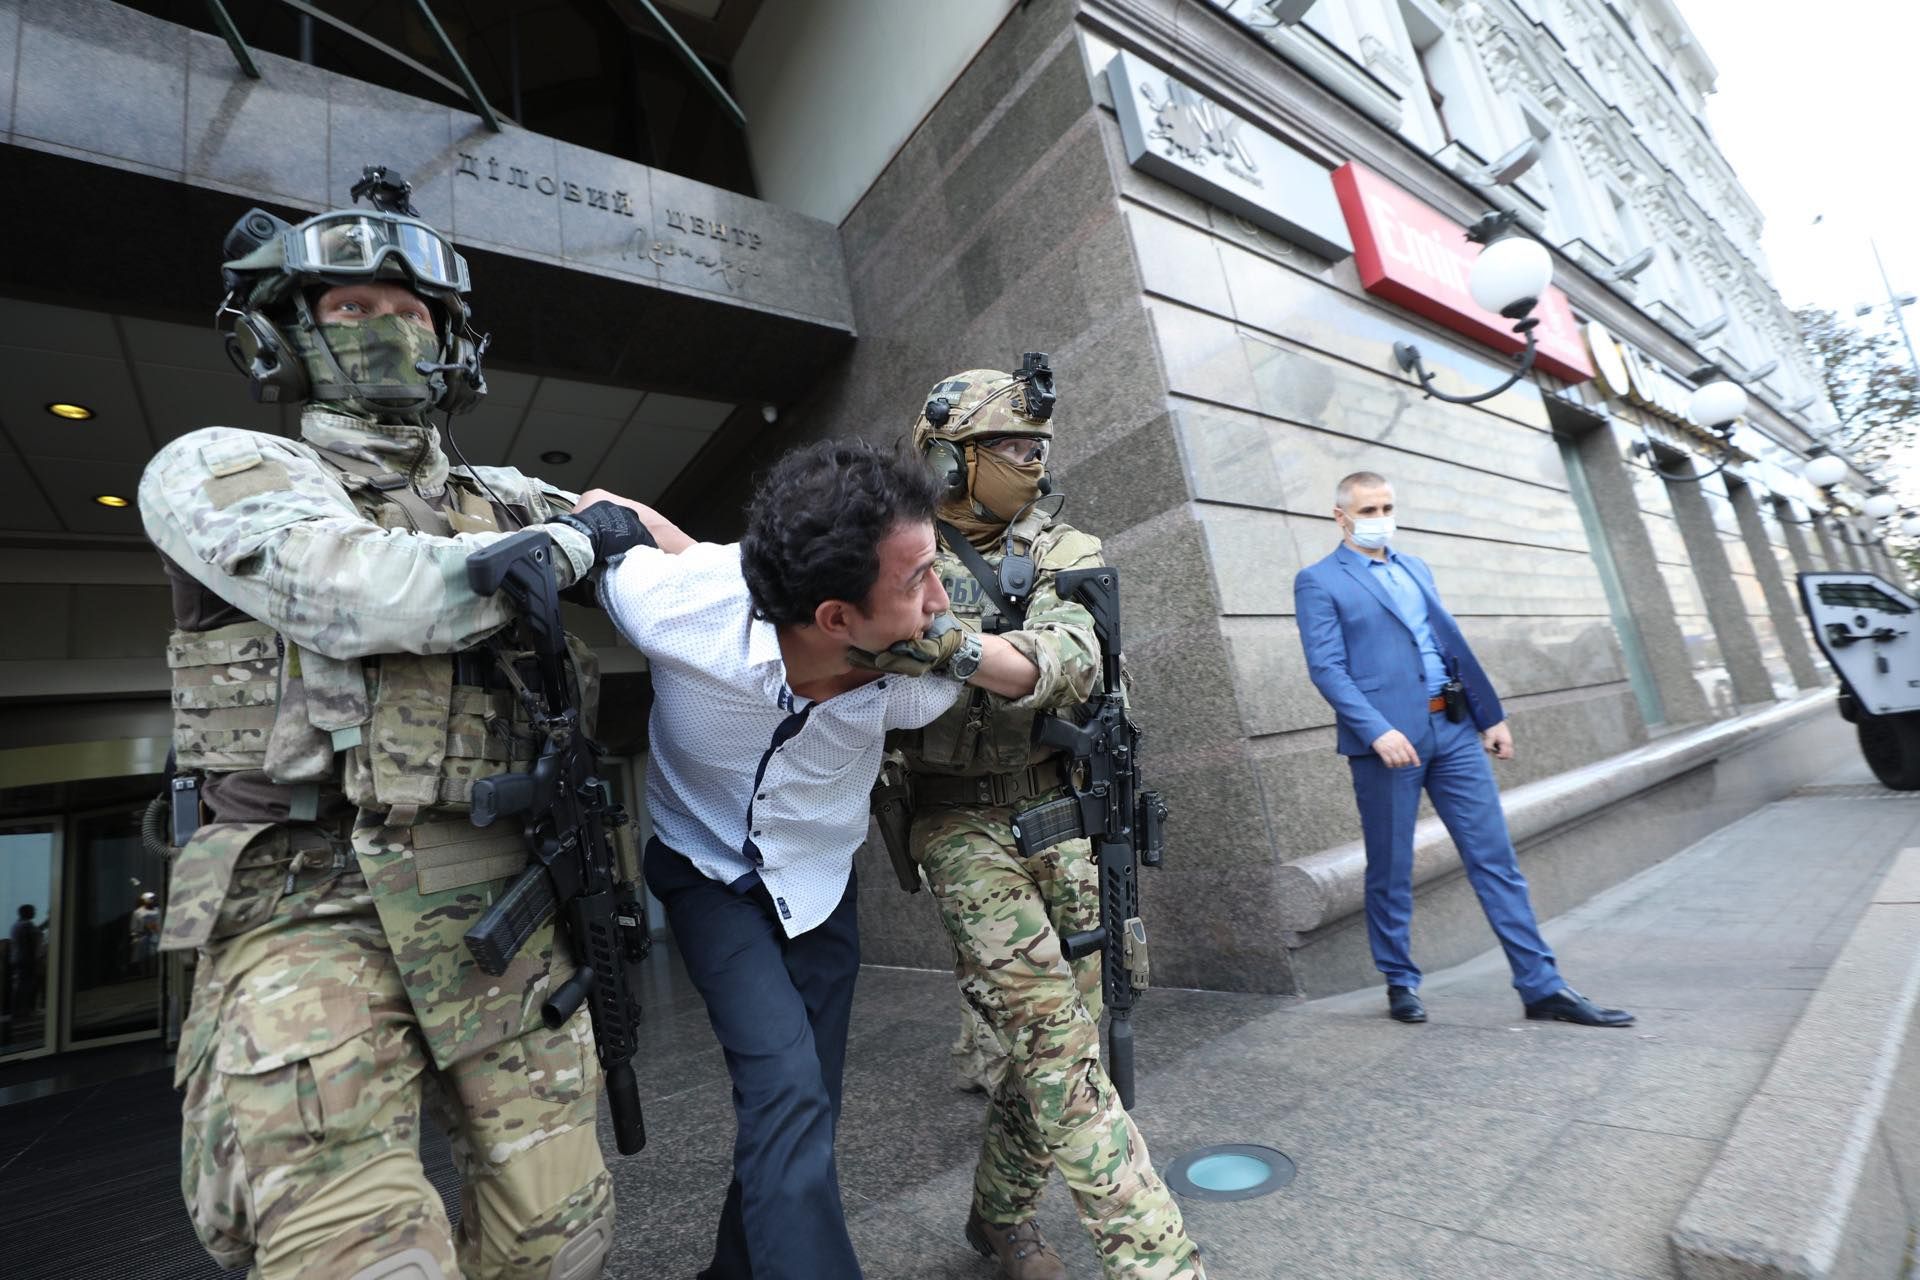 Захват банка в Киеве: какое наказание грозит террористу Каримову